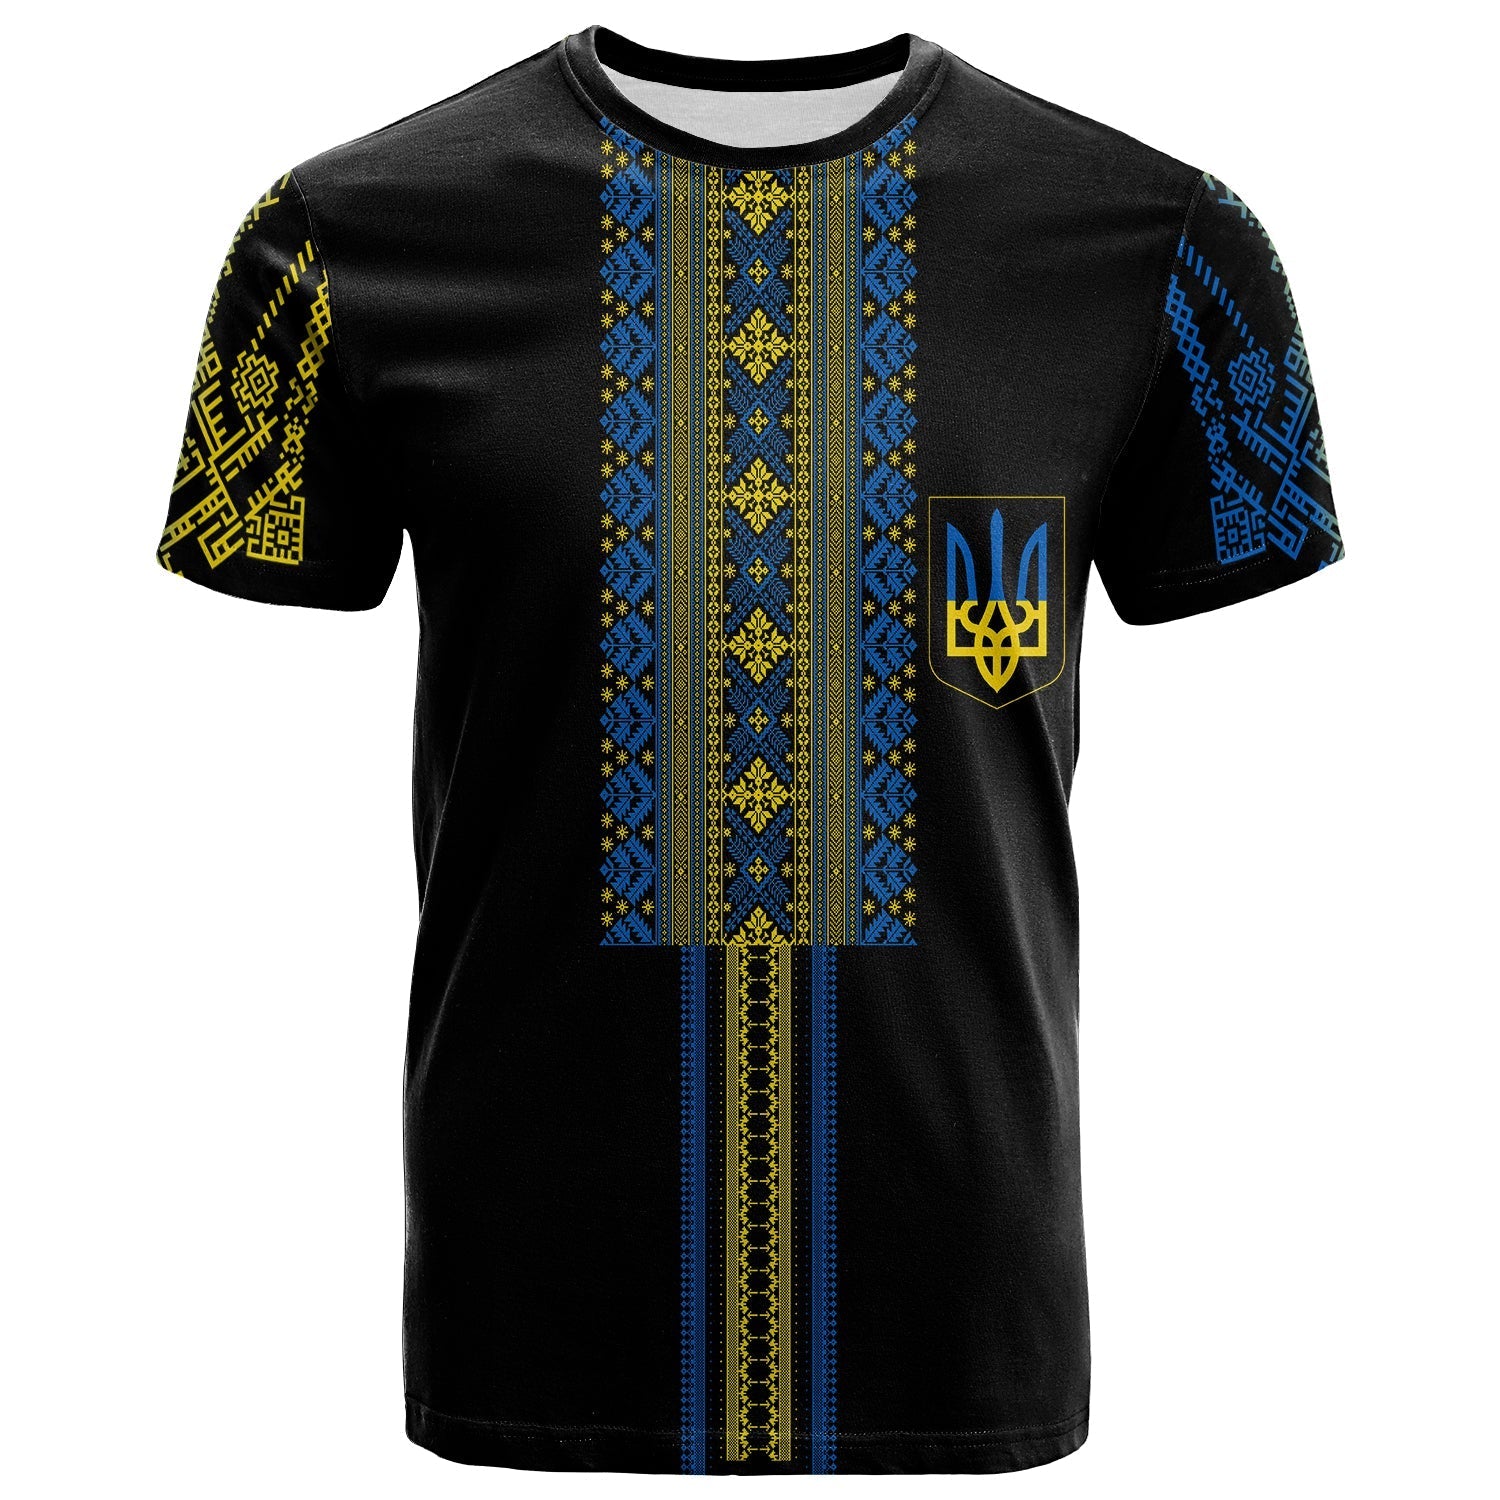 ukraine-vyshyvanka-folk-pattern-t-shirt-slava-ukraini